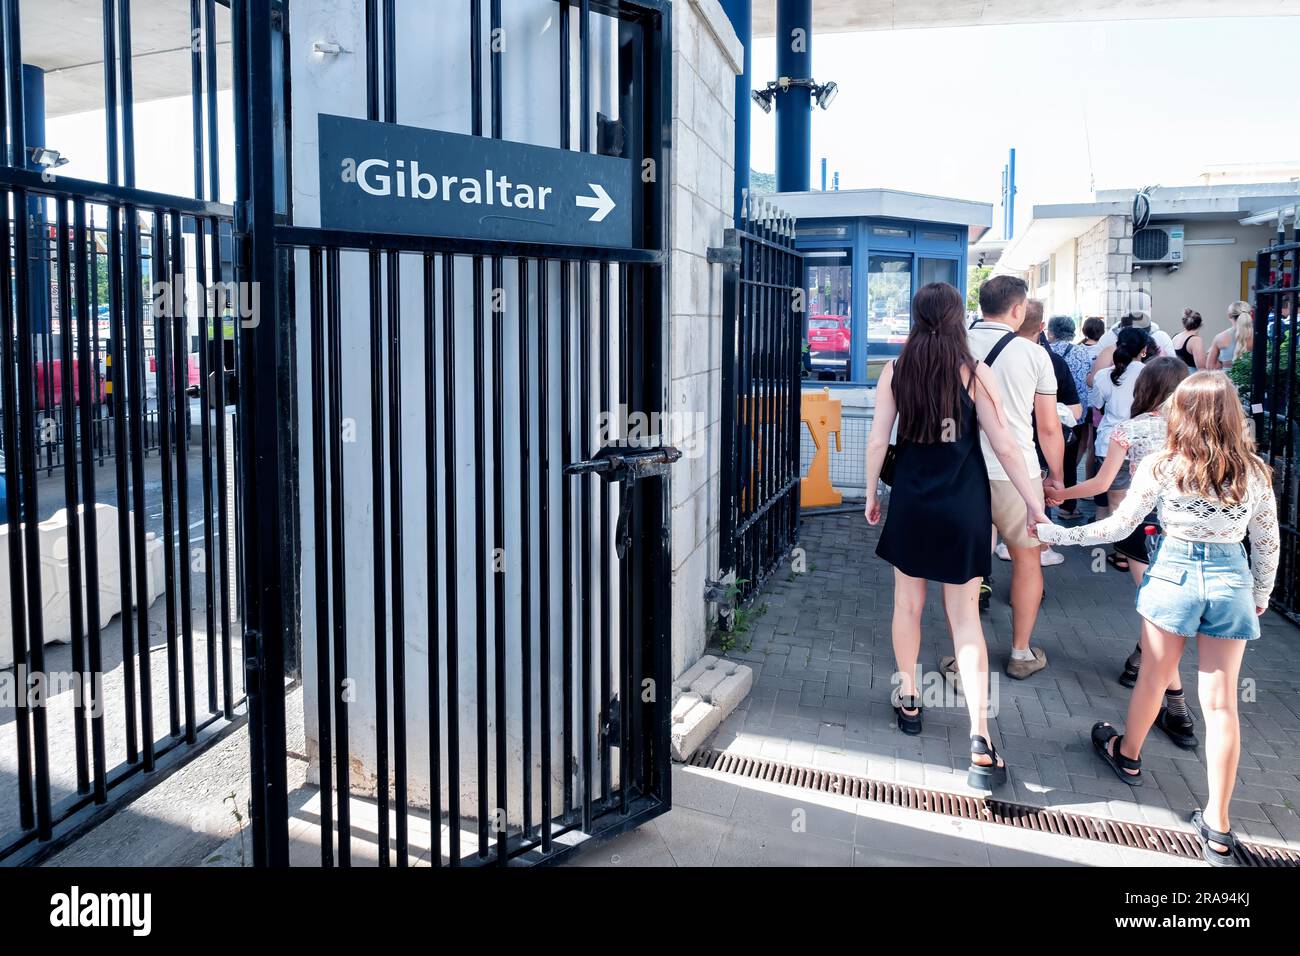 Menschen, die zu Fuß in Richtung Spanien gehen, Grenzübergangsstelle Gibraltar Passkontrolle nähert sich von der spanischen Seite der Grenze. Stockfoto